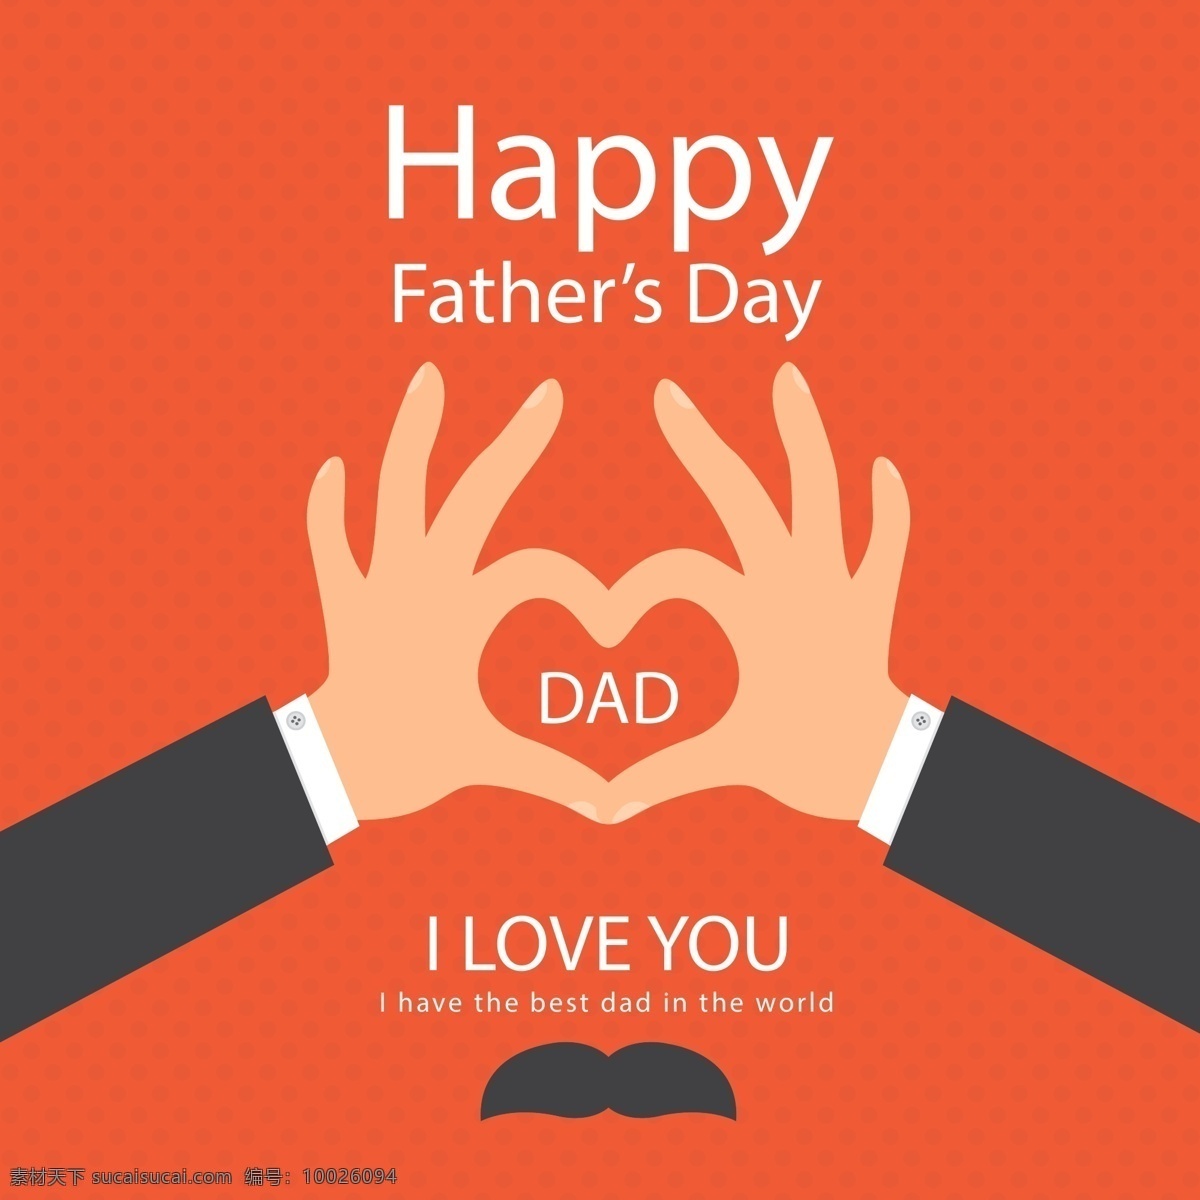 快乐 父亲节 元素 父亲节元素 父亲节设计 父亲节矢量图 父亲节爱你